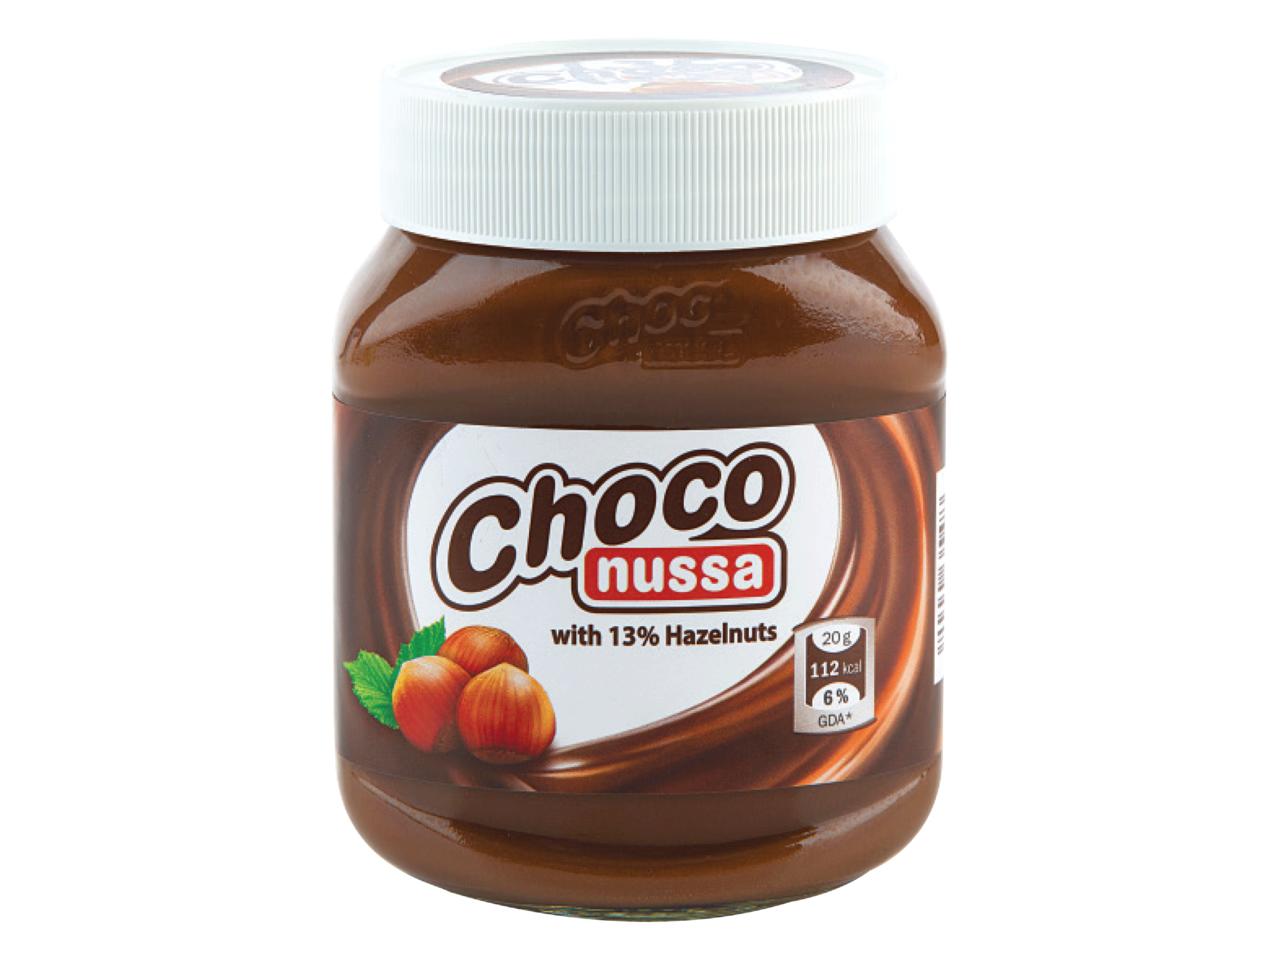 Choco Nussa Chocolate Hazelnut Spread